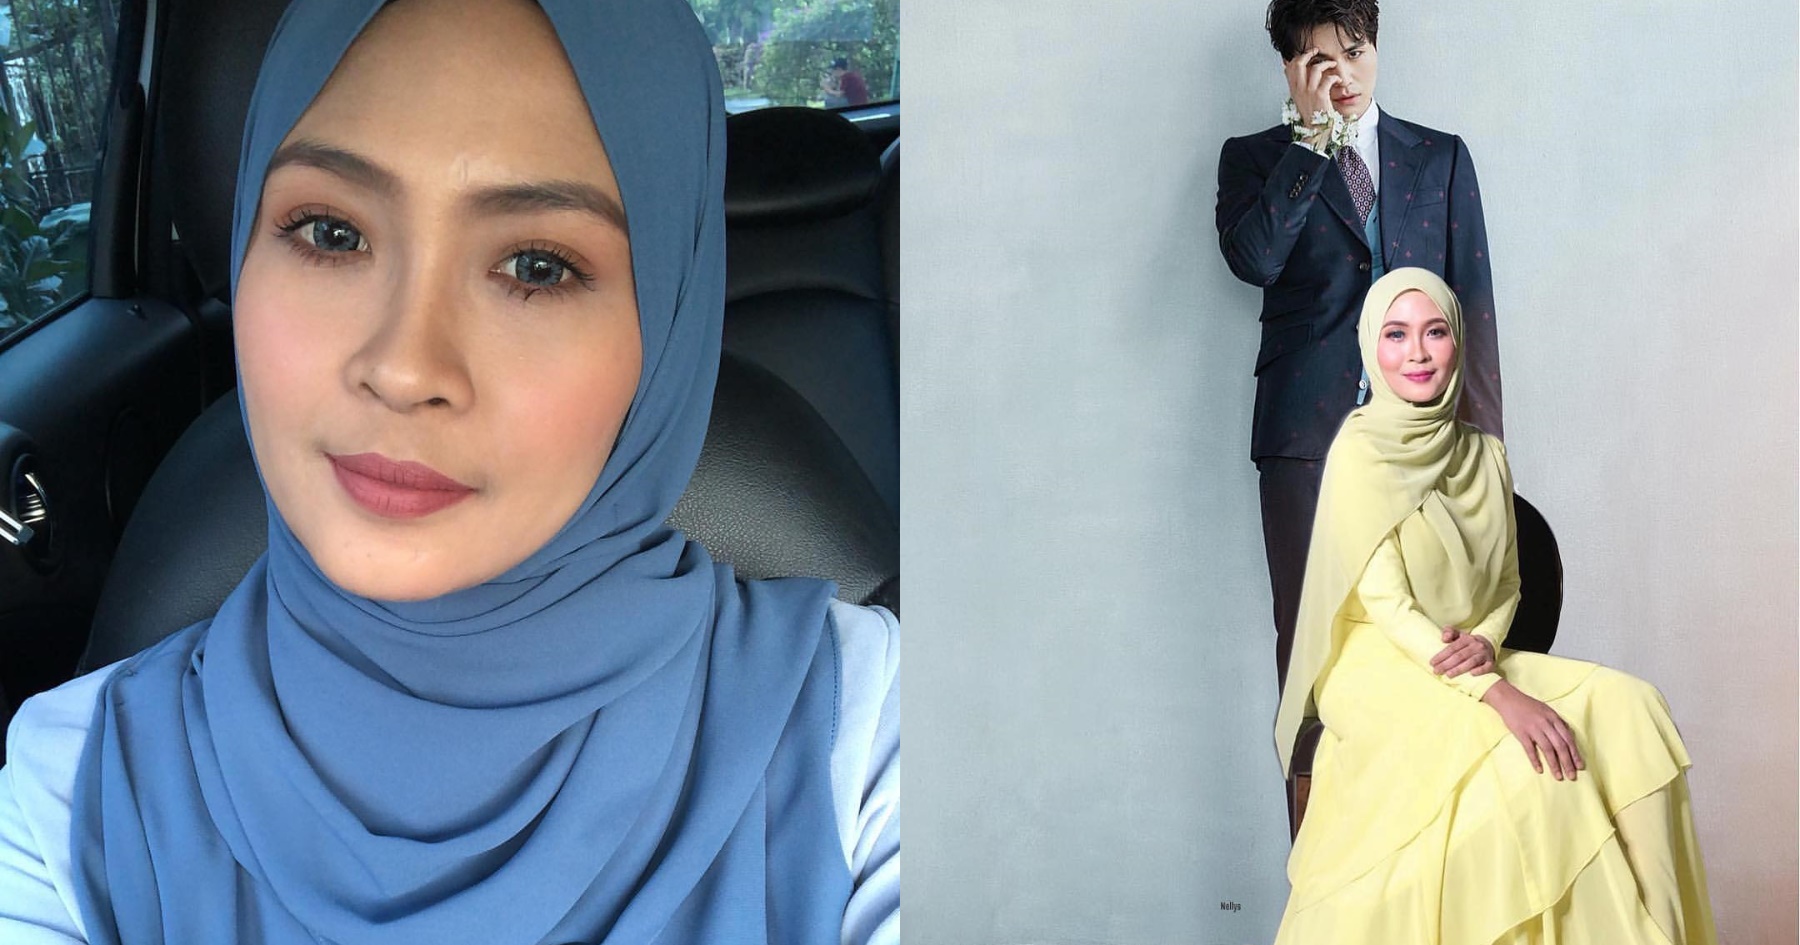 Bekas Suami Siti Nordiana - "Saya Tak Tahu Kemunculan Dia" - Siti